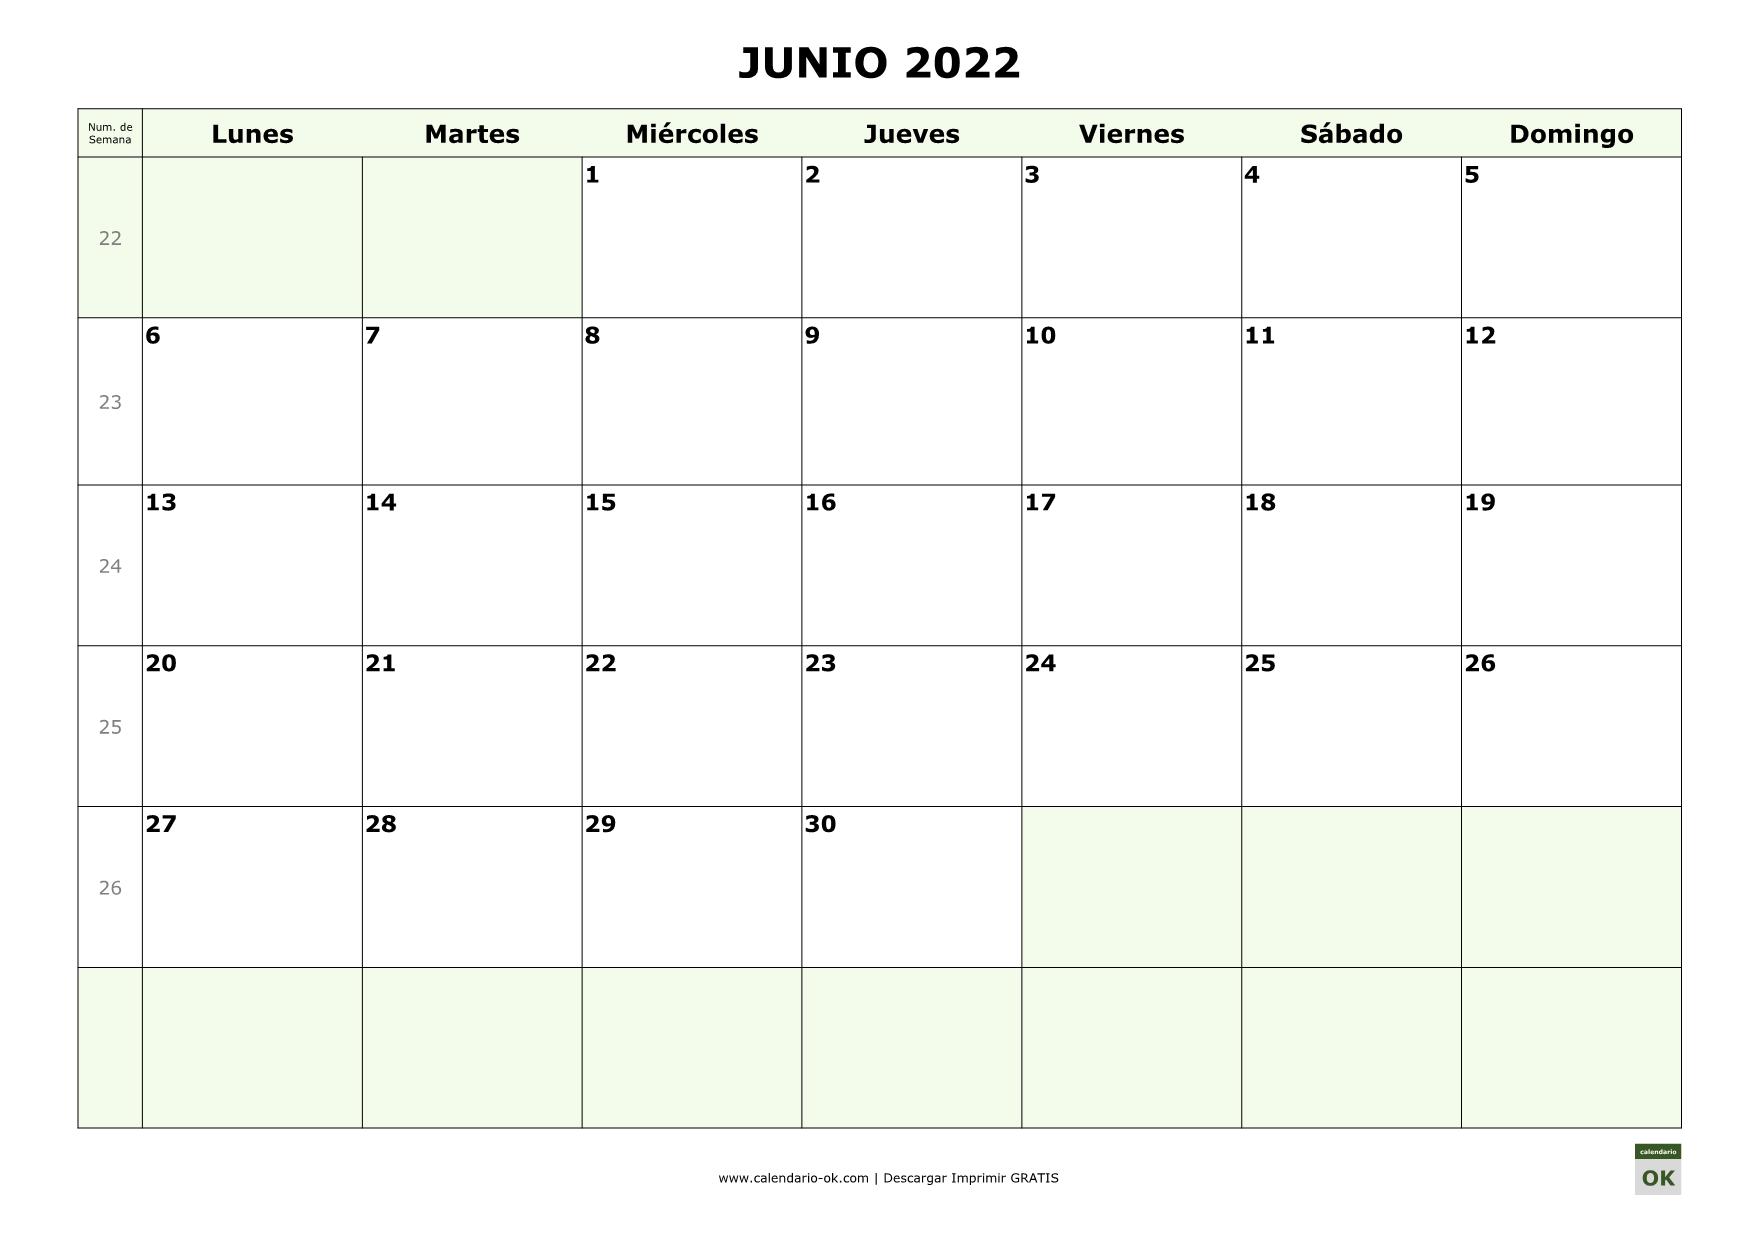 JUNIO 2022 con Numero de Semana